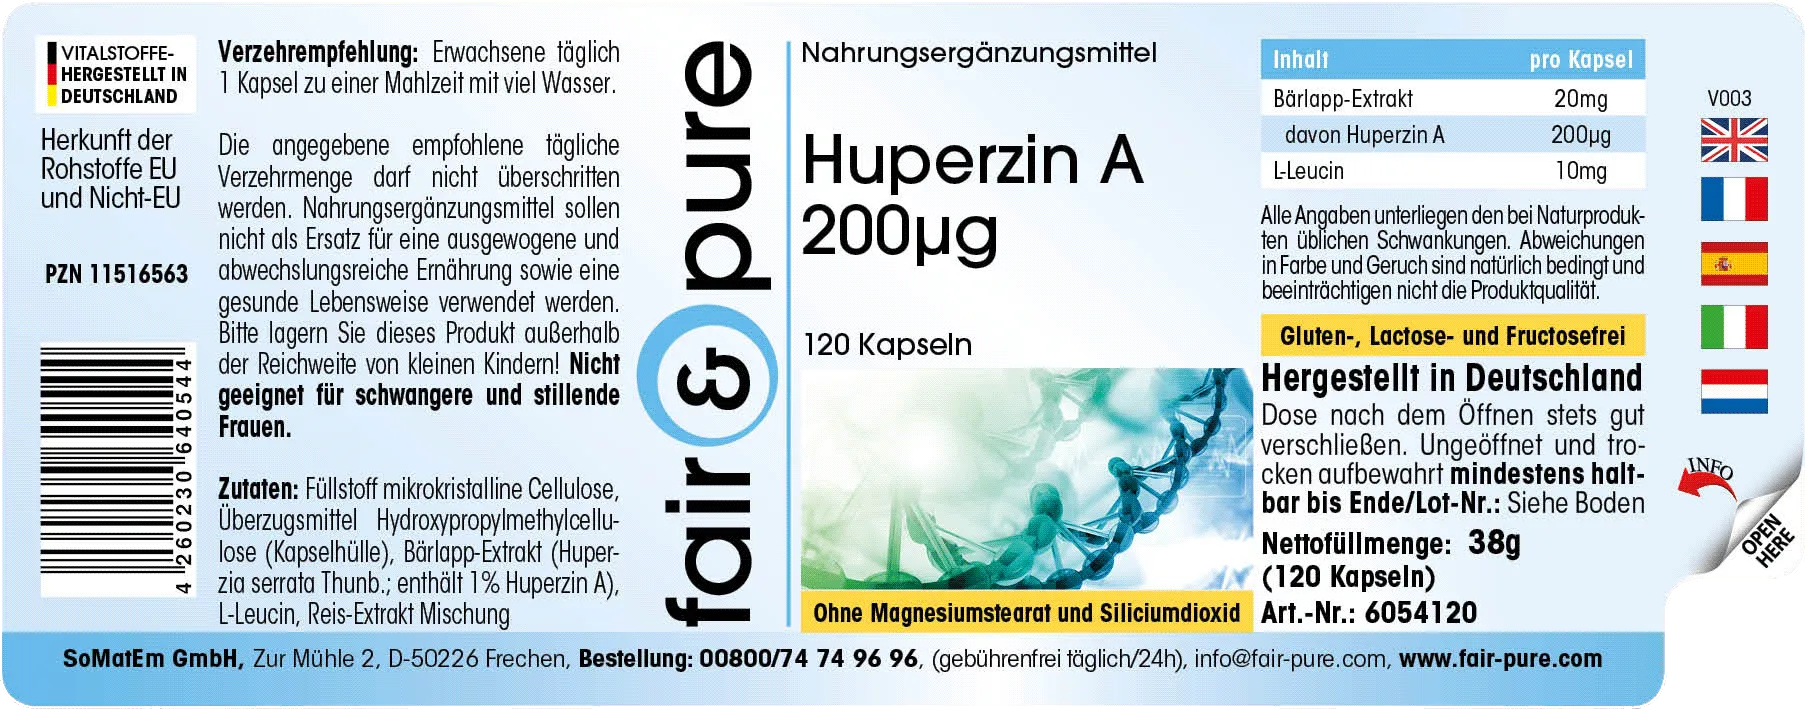 Huperzine A 200µg